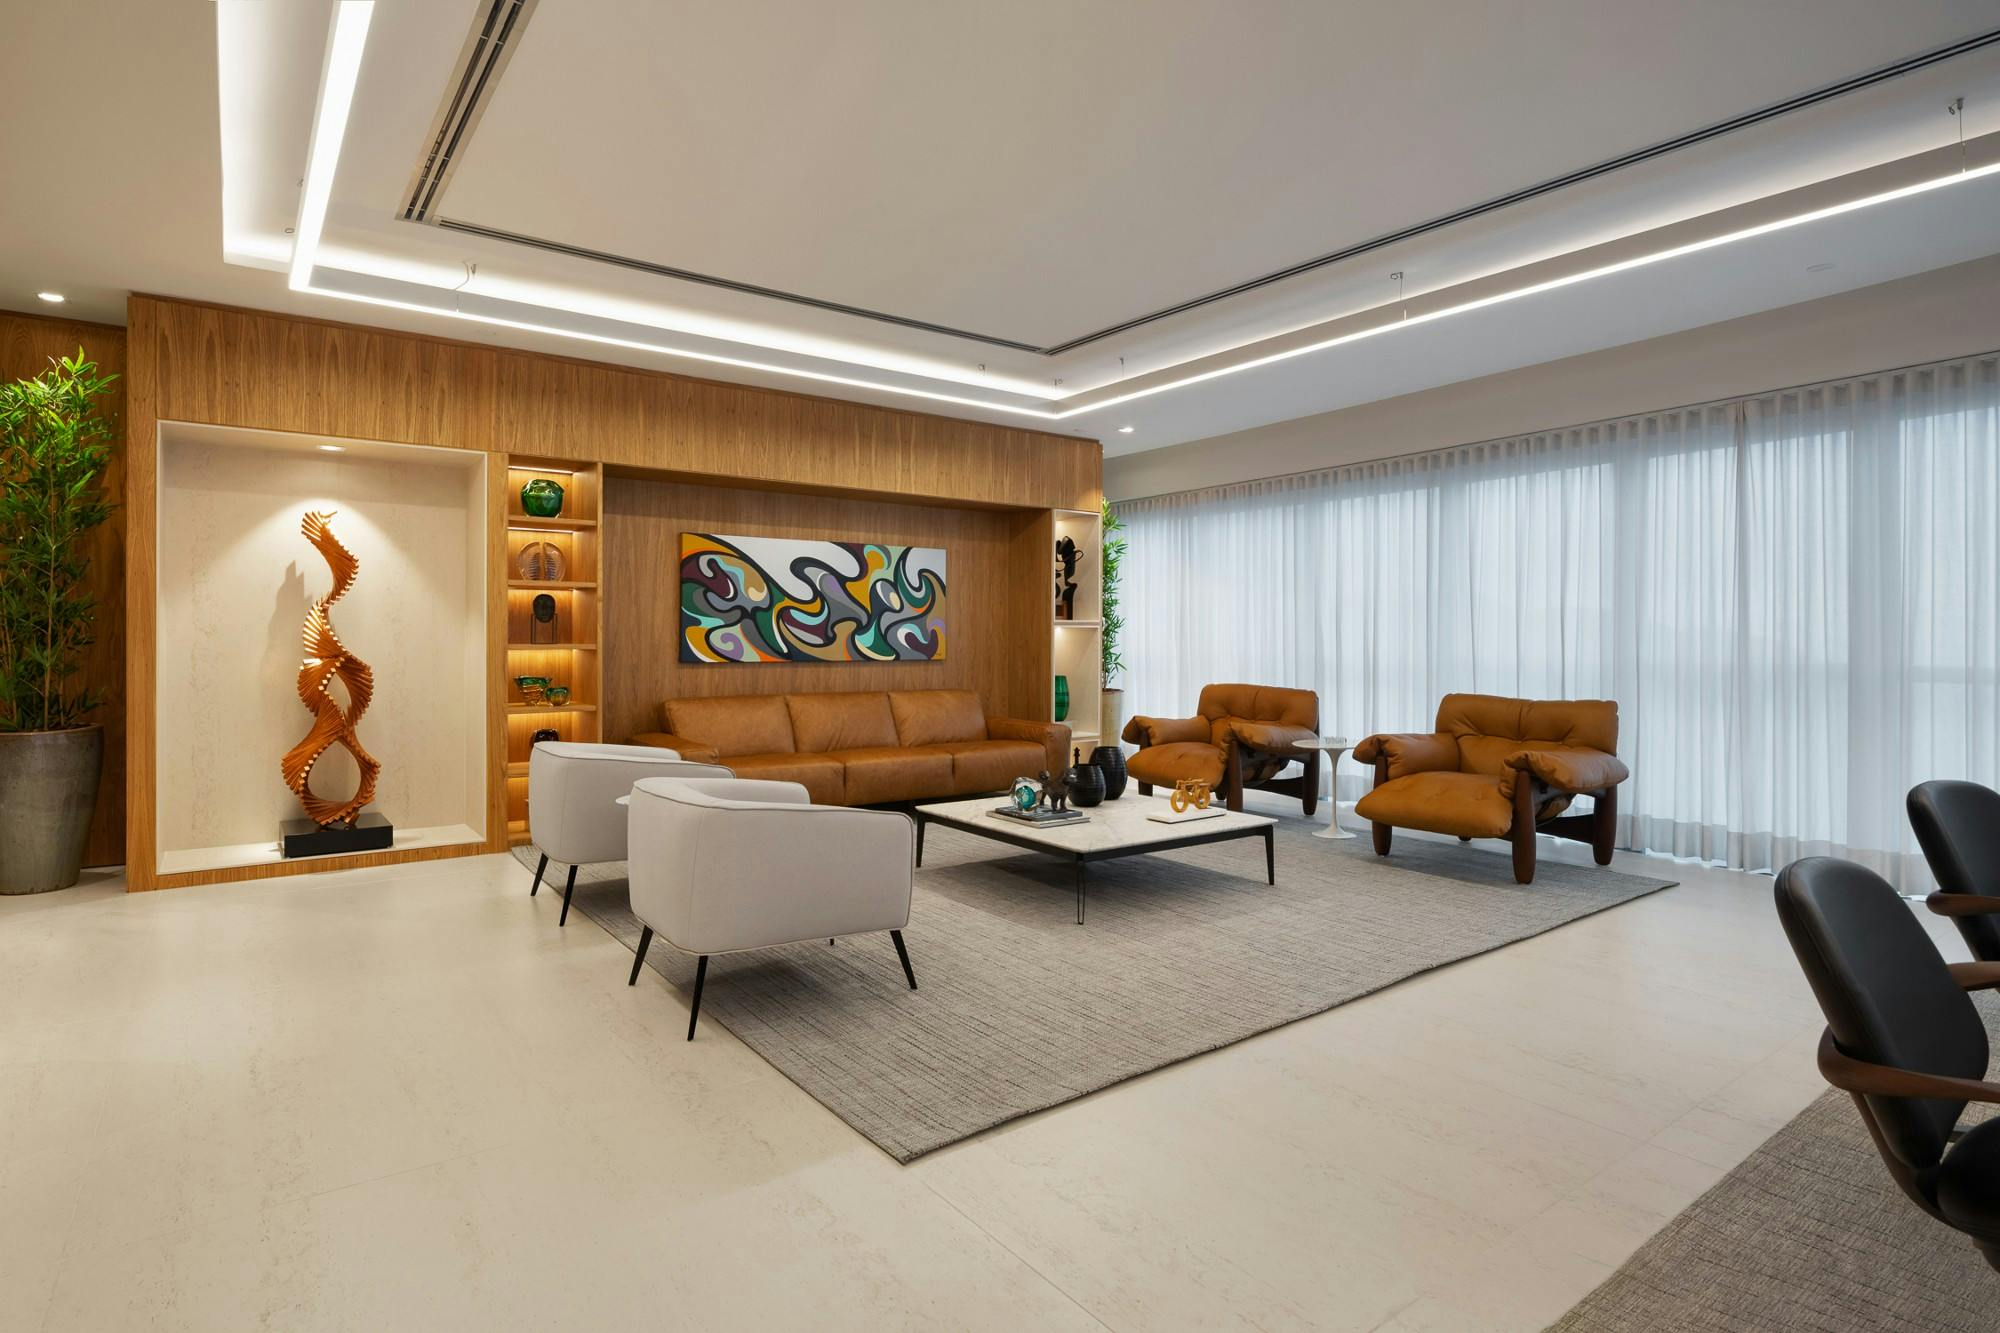 A kép száma 33 a Cosentino Magyarország {{São Paulo’s leading business group uses Dekton in its new elegant offices}} aktuális részének 33 képszáma.